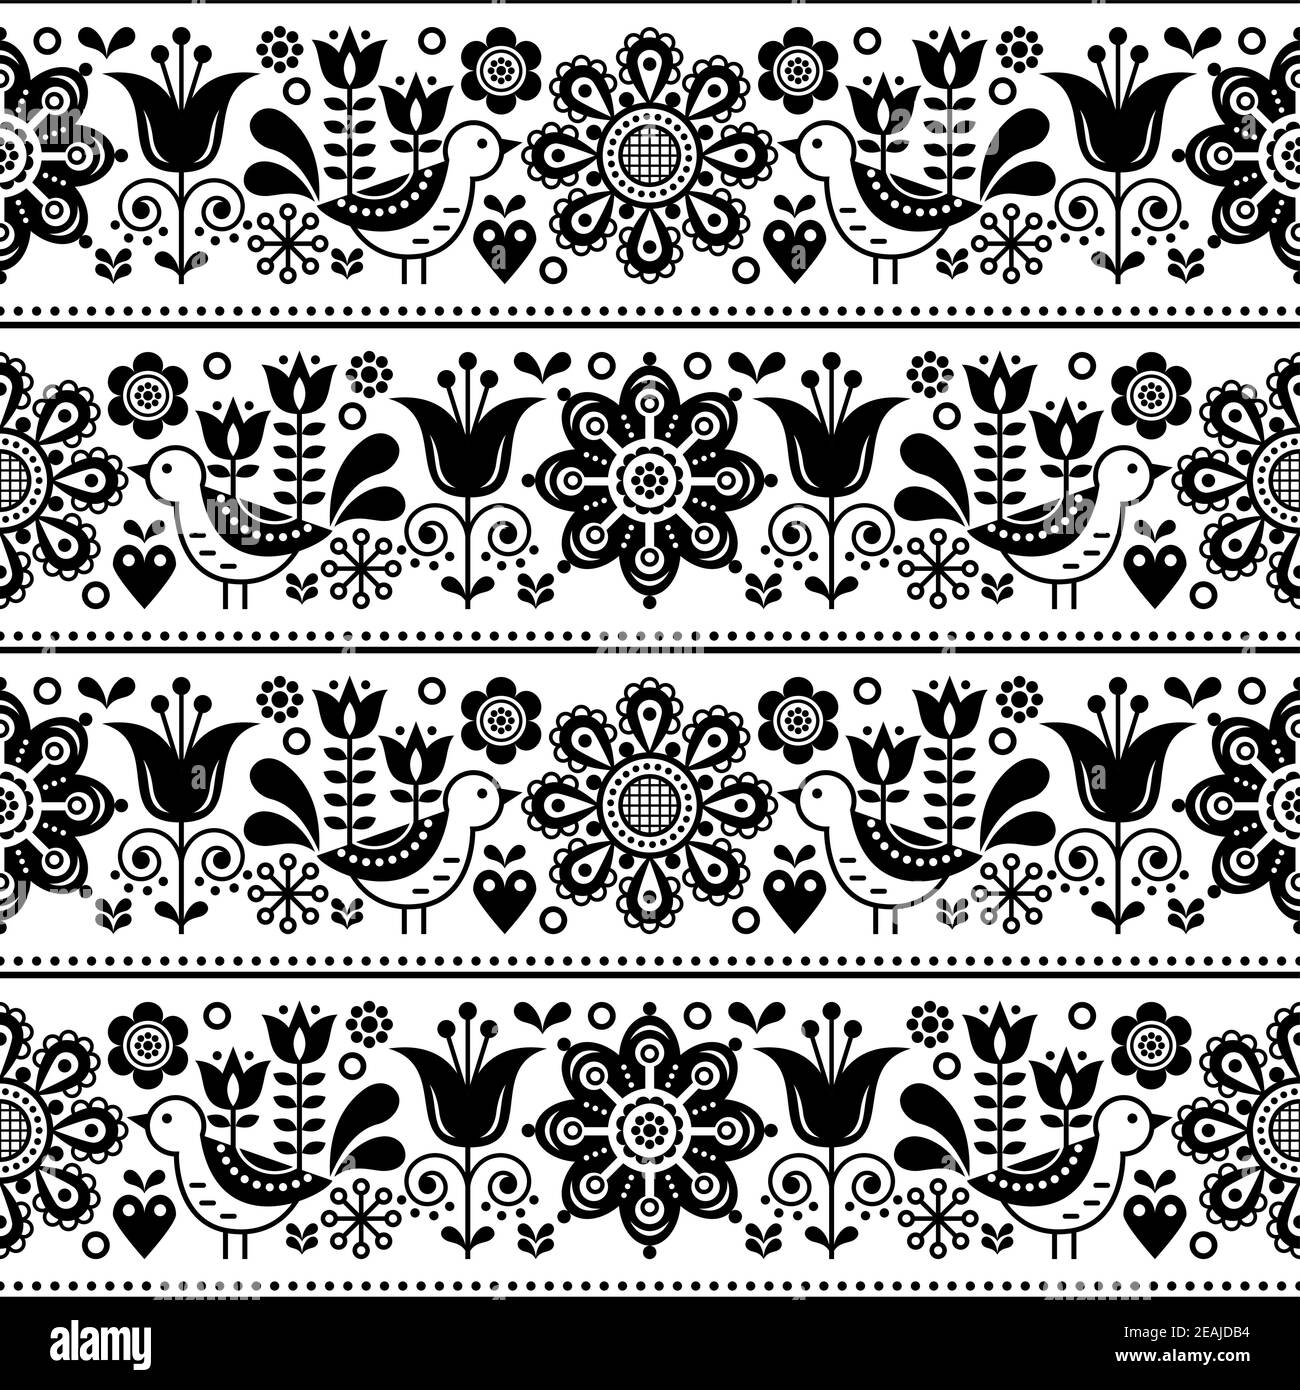 Skandinavische Volkskunst nahtlose Vektor-Design mit Blumen und Vögel, niedliche repetitive weiß und schwarz Muster Stock Vektor